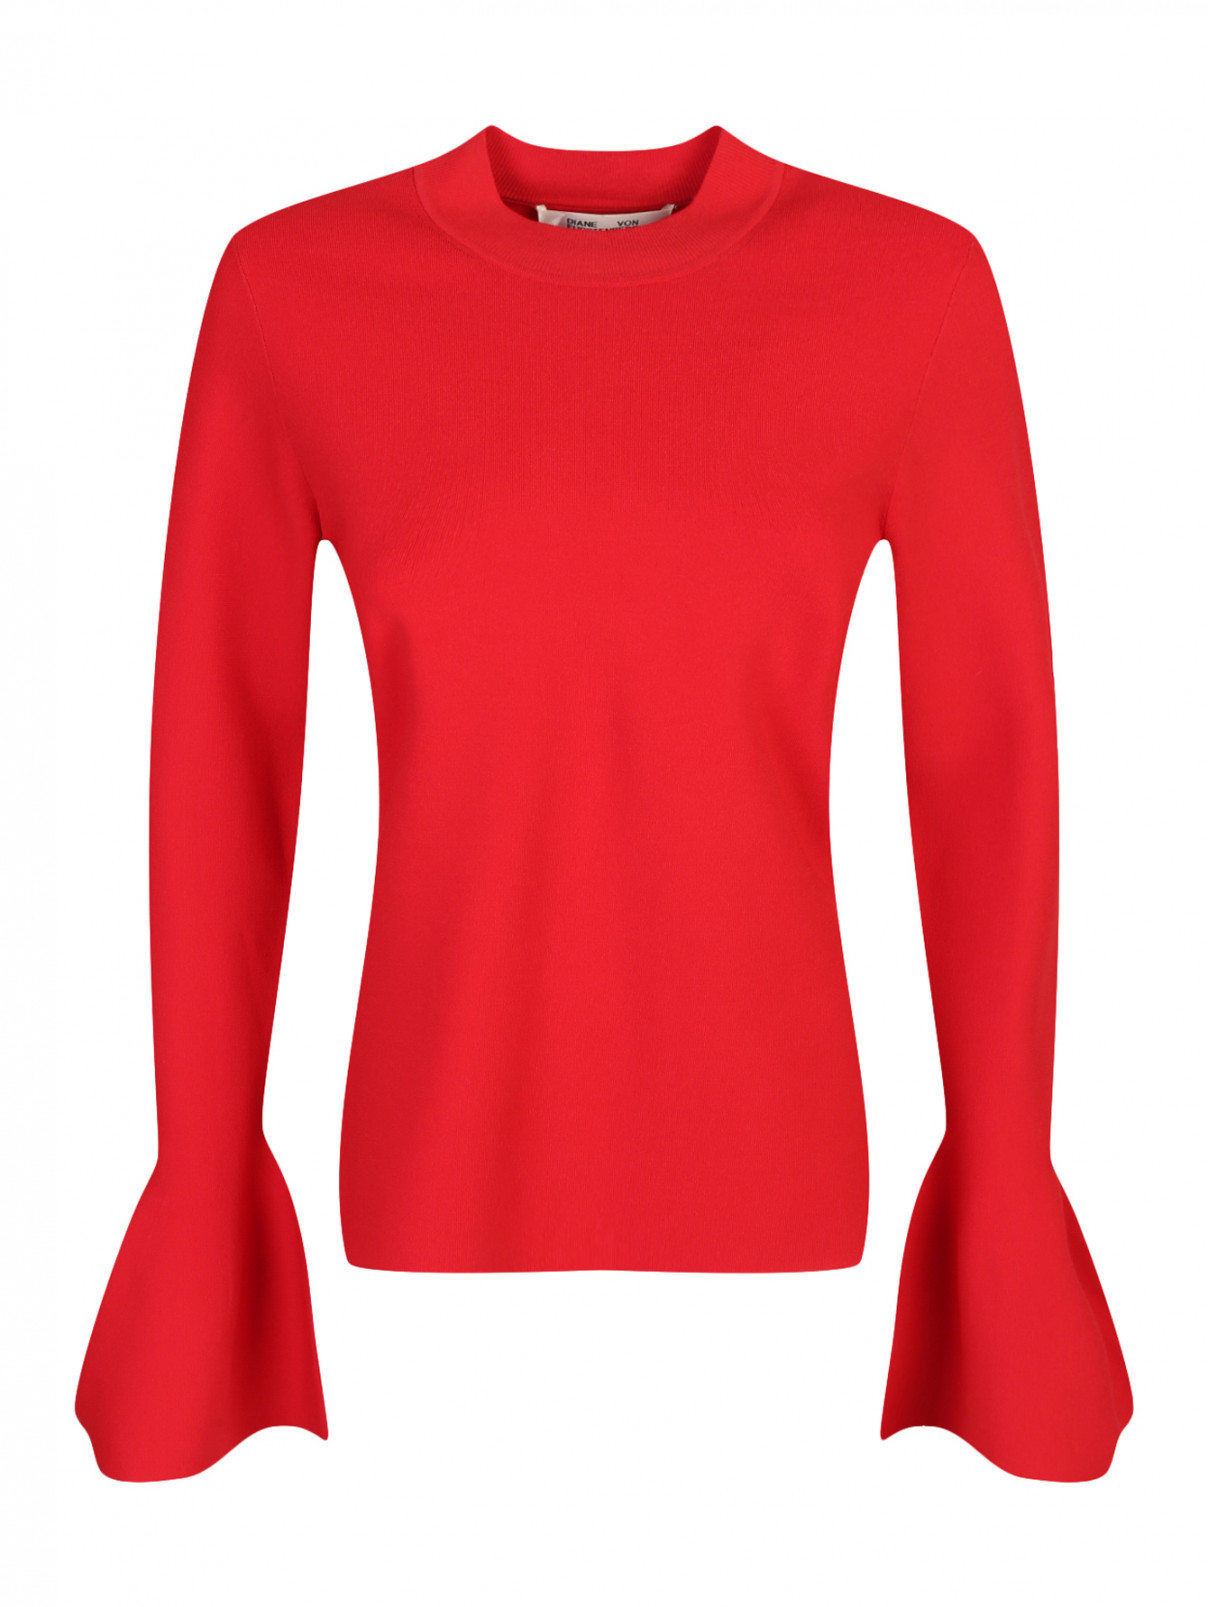 Джемпер с рукавами "фонарик" Diane von Furstenberg  –  Общий вид  – Цвет:  Красный